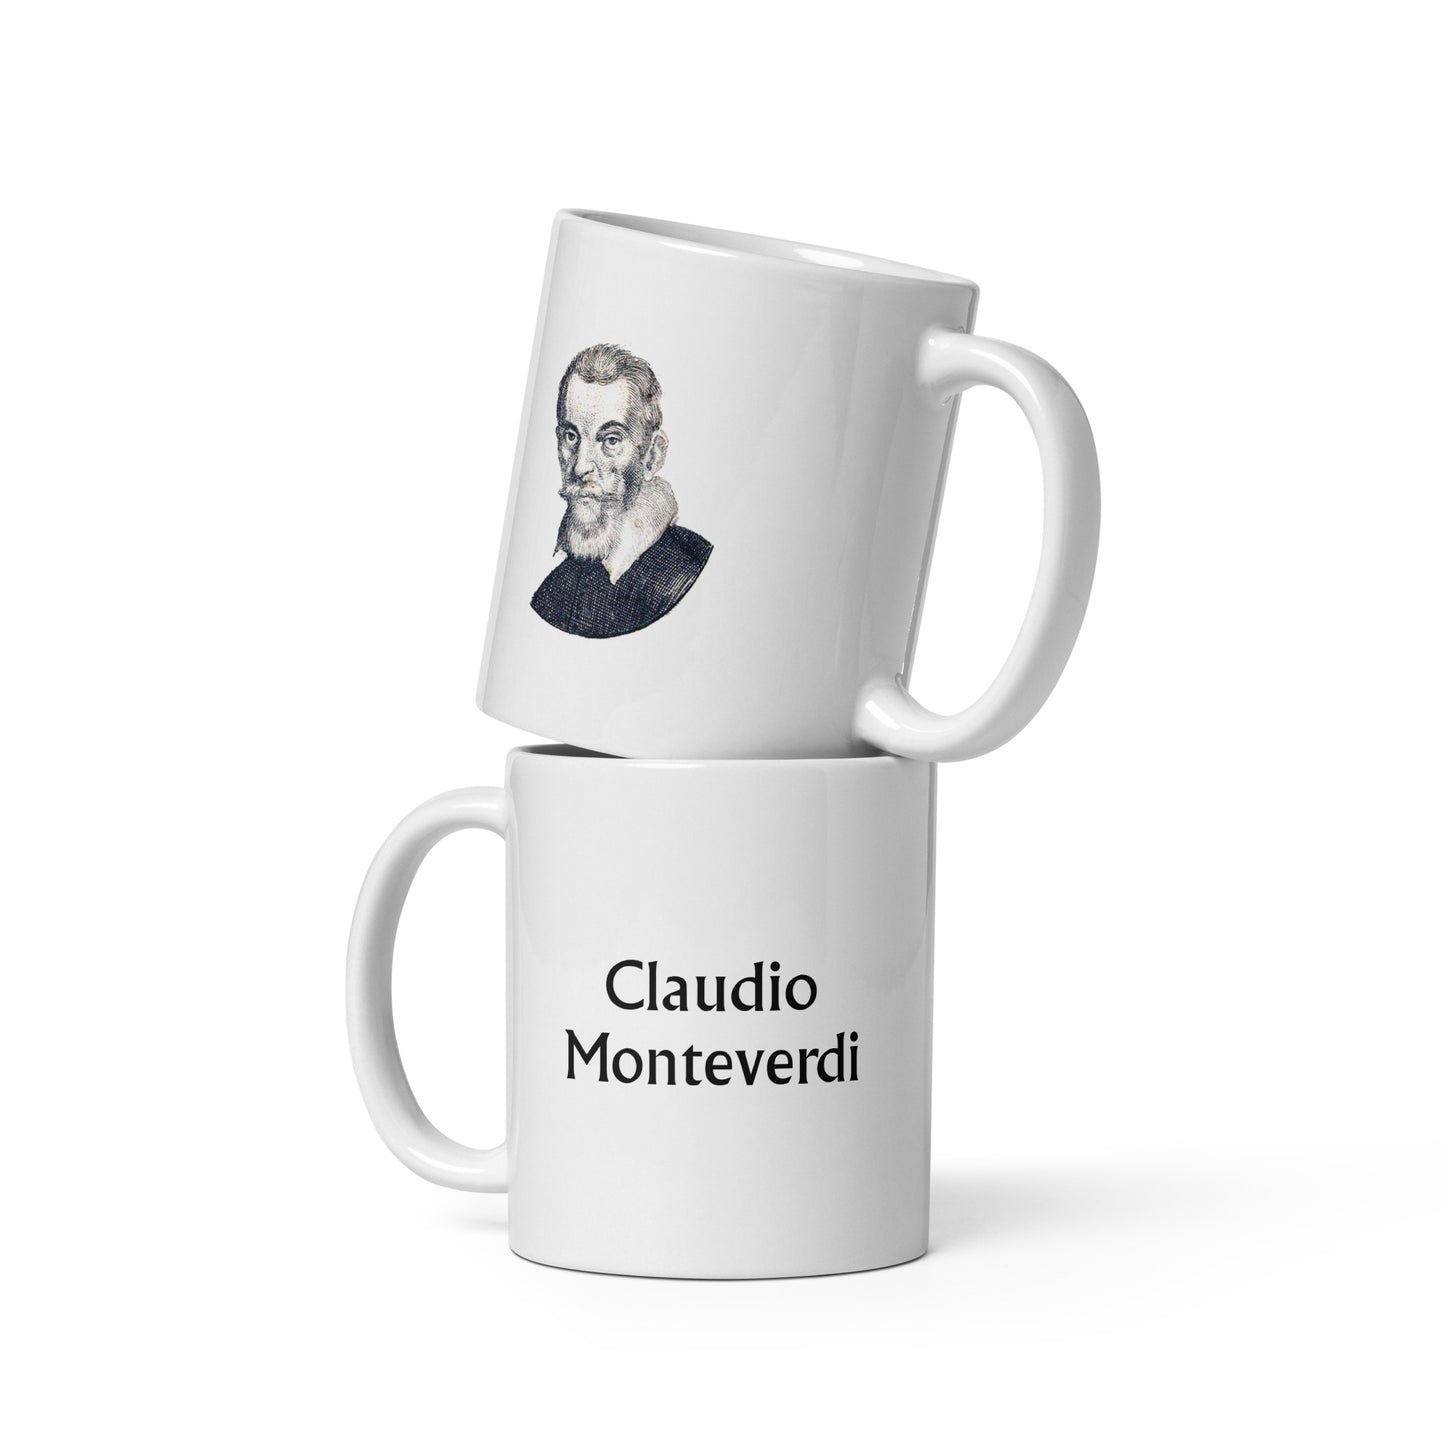 Claudio Monteverdi white glossy mug